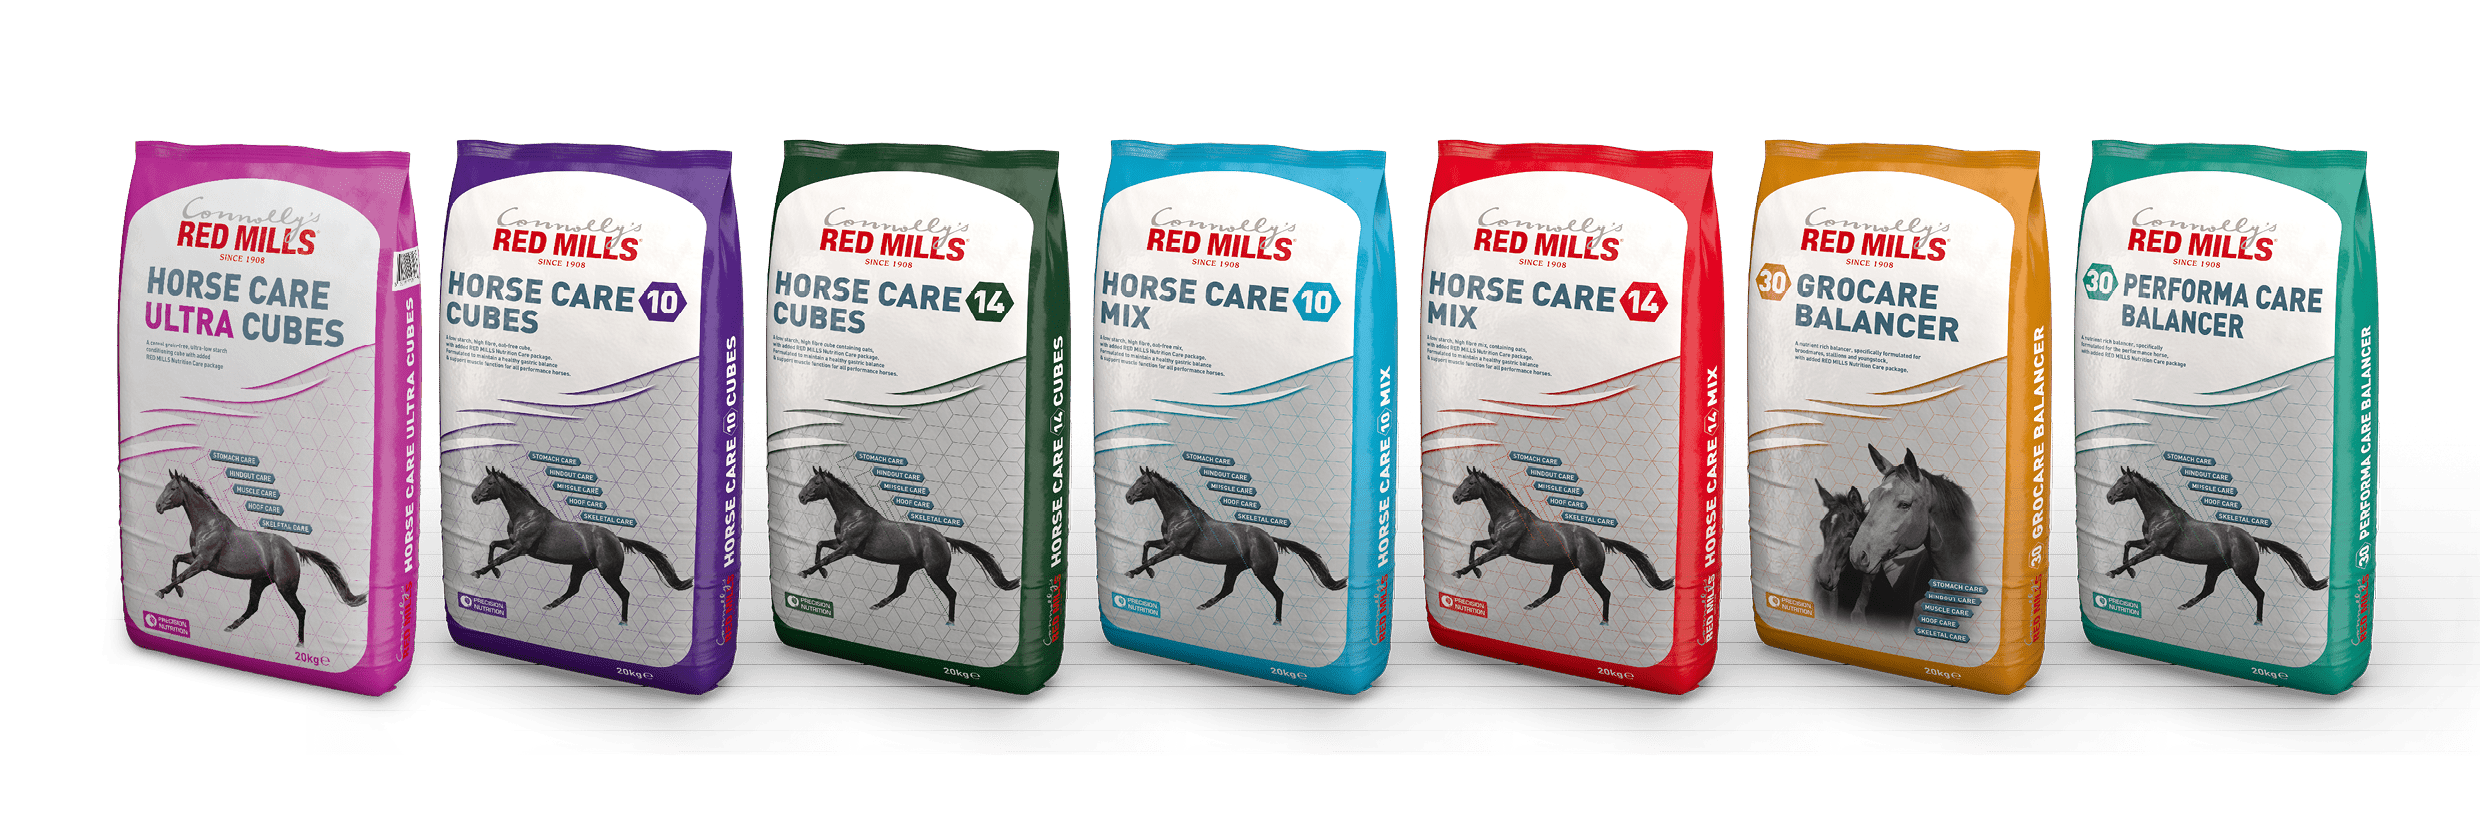 HorseCare Range RedMills